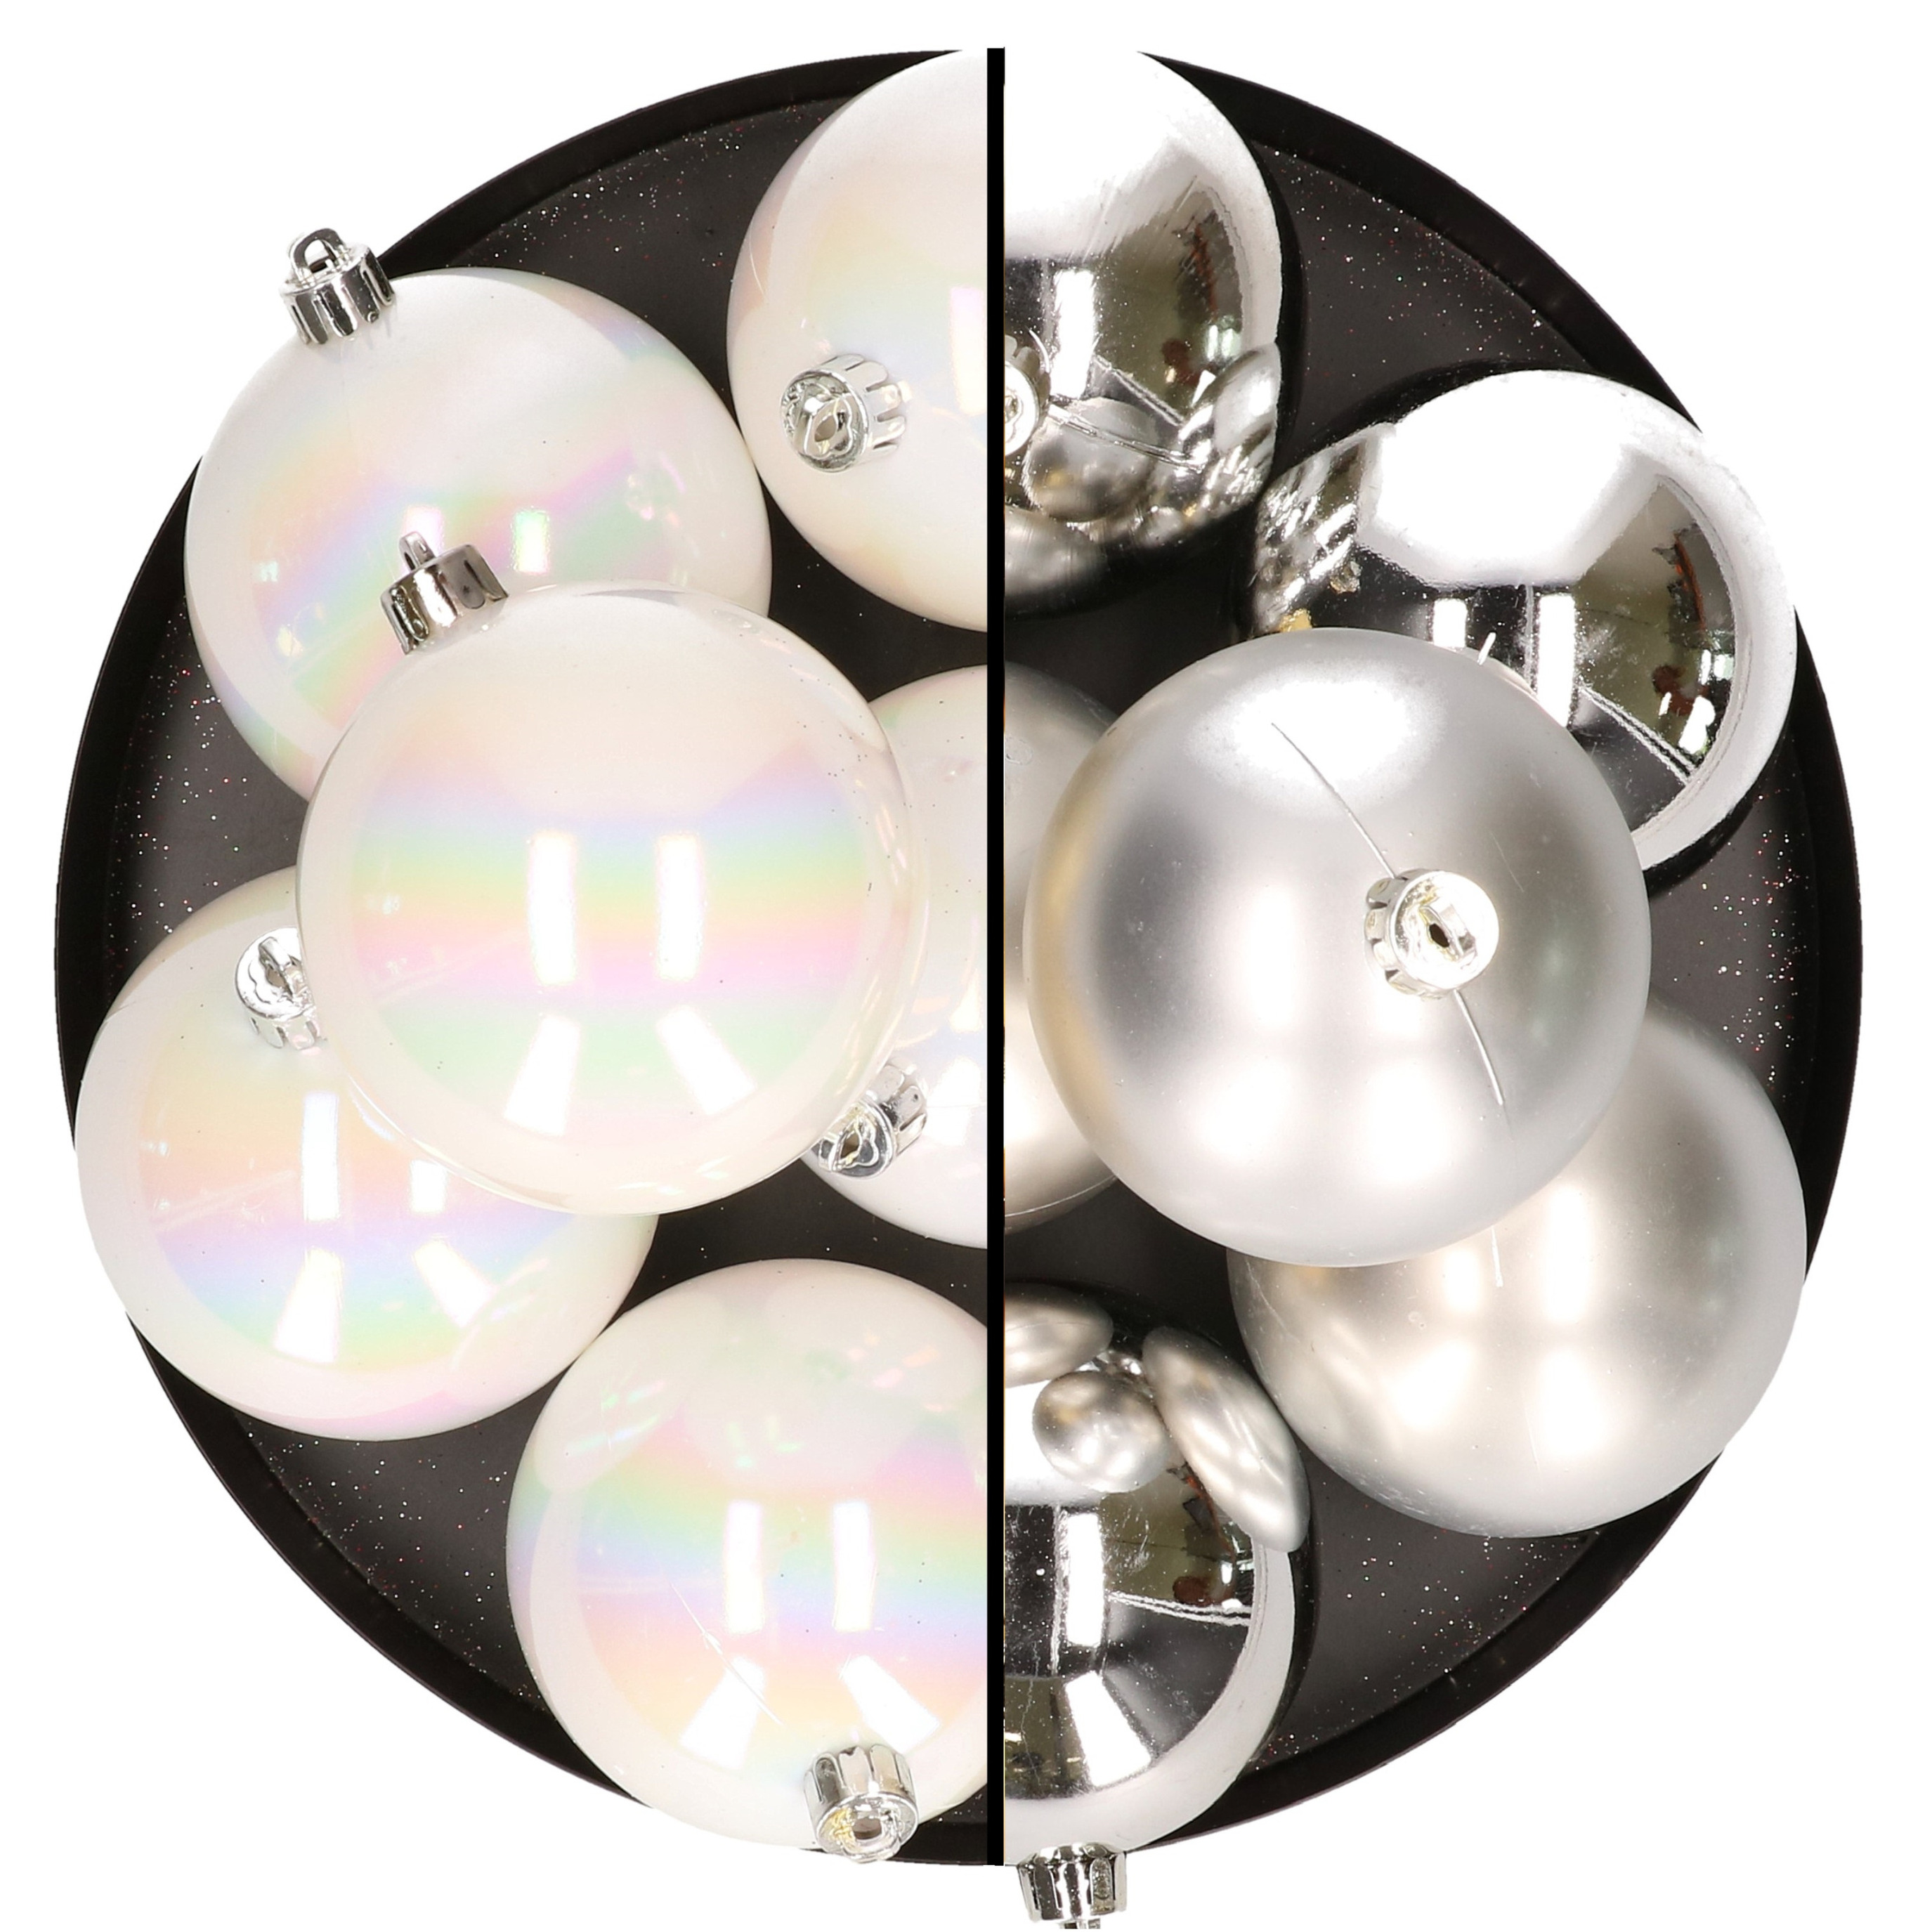 12x stuks kunststof kerstballen 8 cm mix van parelmoer wit en zilver